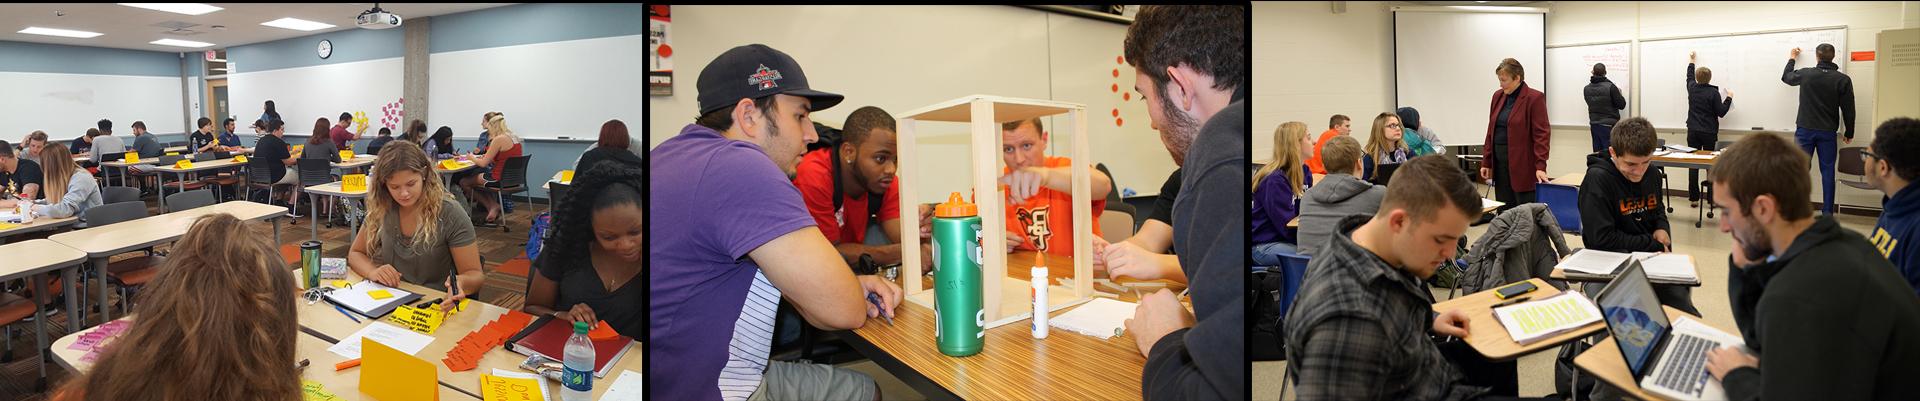 一个3面板照片的学生工作的项目. 1. 学生们坐在课桌前，在白板上写字. 2. 正在设计产品原型的学生. 3. 学生们坐在课桌上做小组项目.